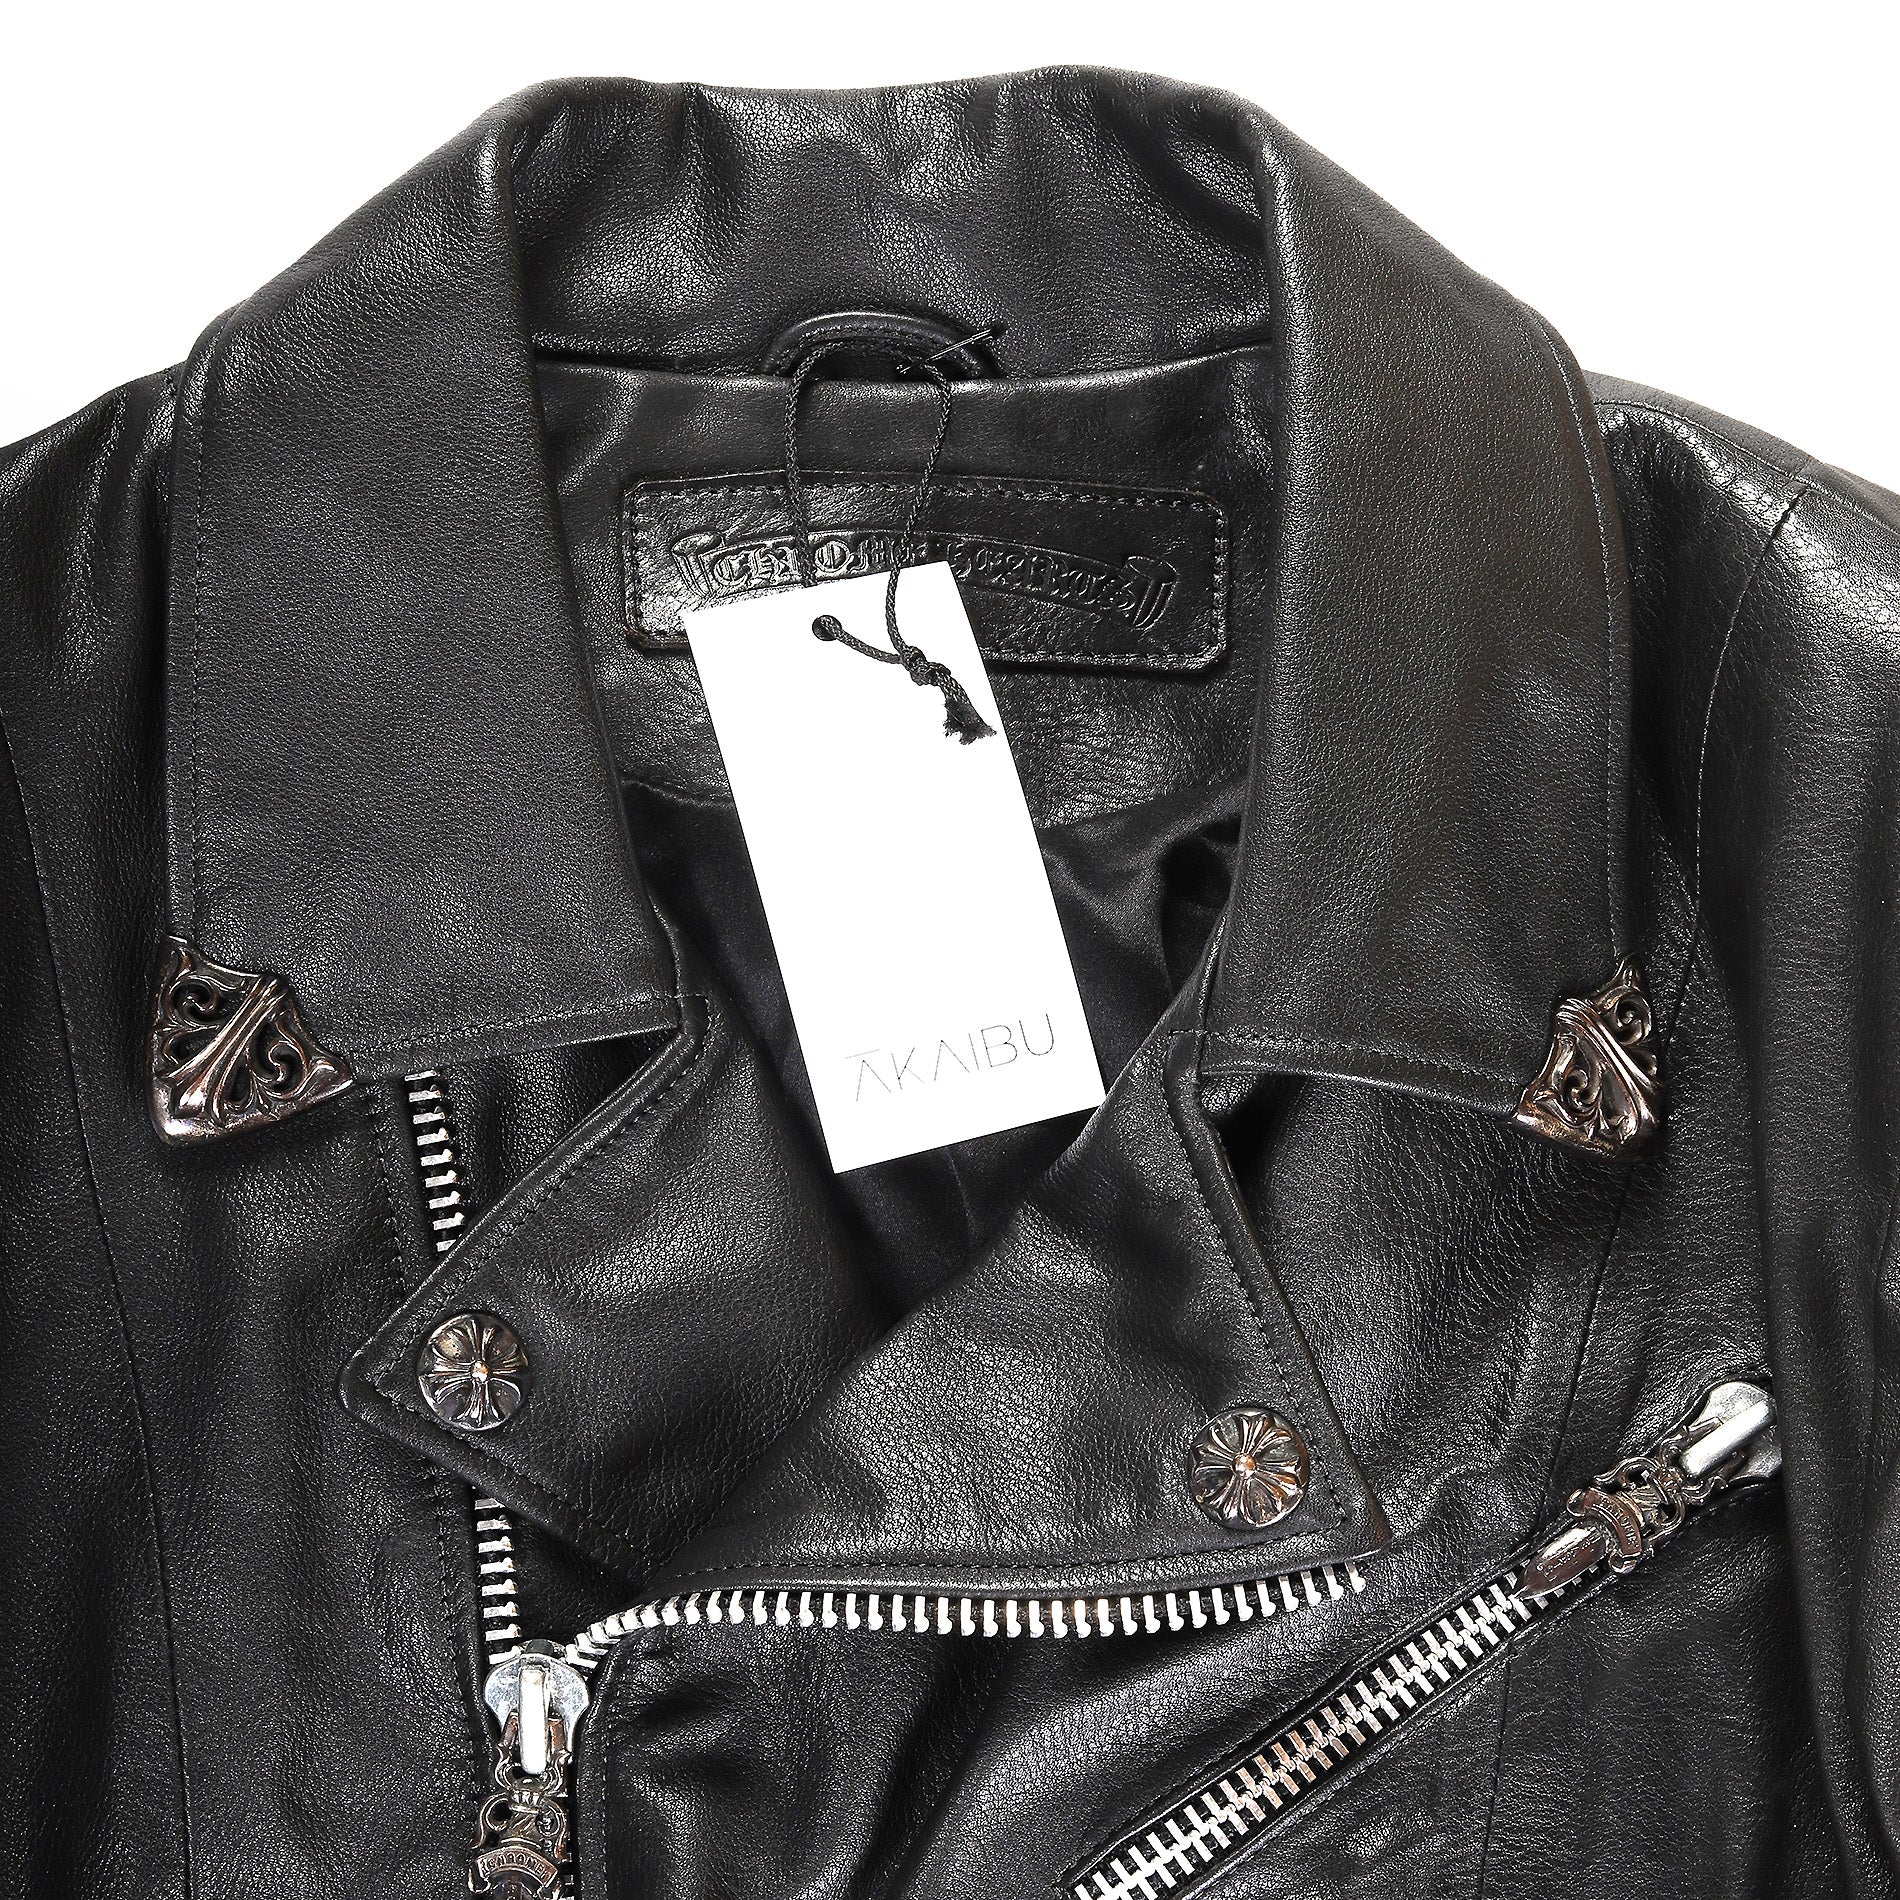 Chrome Hearts JJ DEAN Black Leather Embellised Motorcycle Jacket